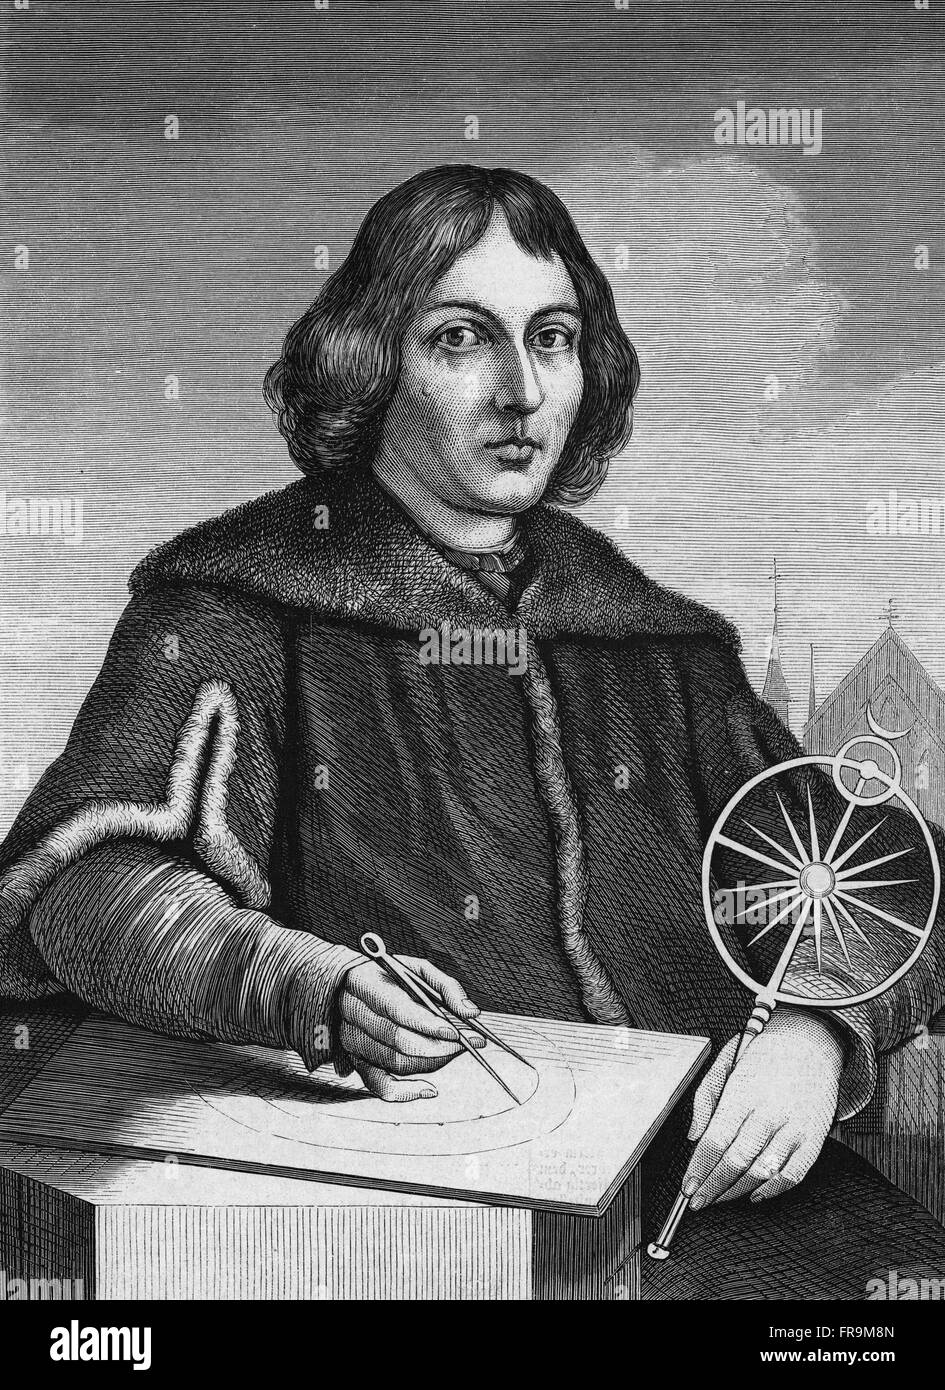 Porträt des Nicolaus Copernicus, Mathematiker und Astronom.  Nicolaus Copernicus - (19 Februar 1473 – 24 Mai 1543) war ein Renaissance-Mathematiker und Astronom formuliert ein Modell des Universums, die die Sonne platziert, anstatt die Erde im Zentrum des Universums. Stockfoto